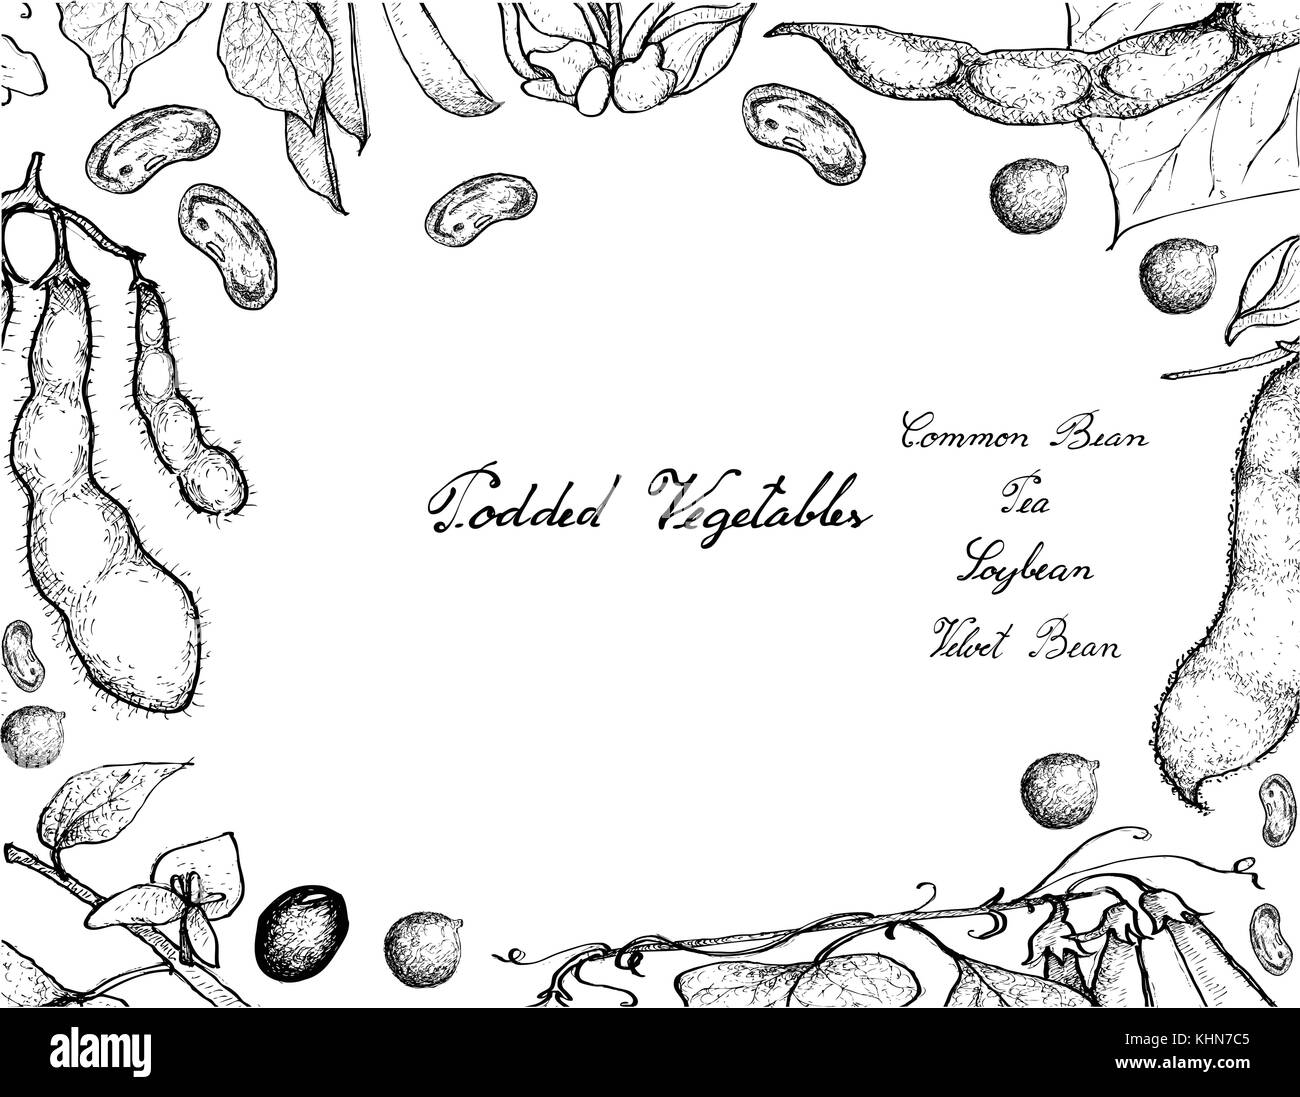 Gemüse, Illustration von Hand gezeichnete Skizze frische podded Gemüse auf weißem Hintergrund. Stock Vektor